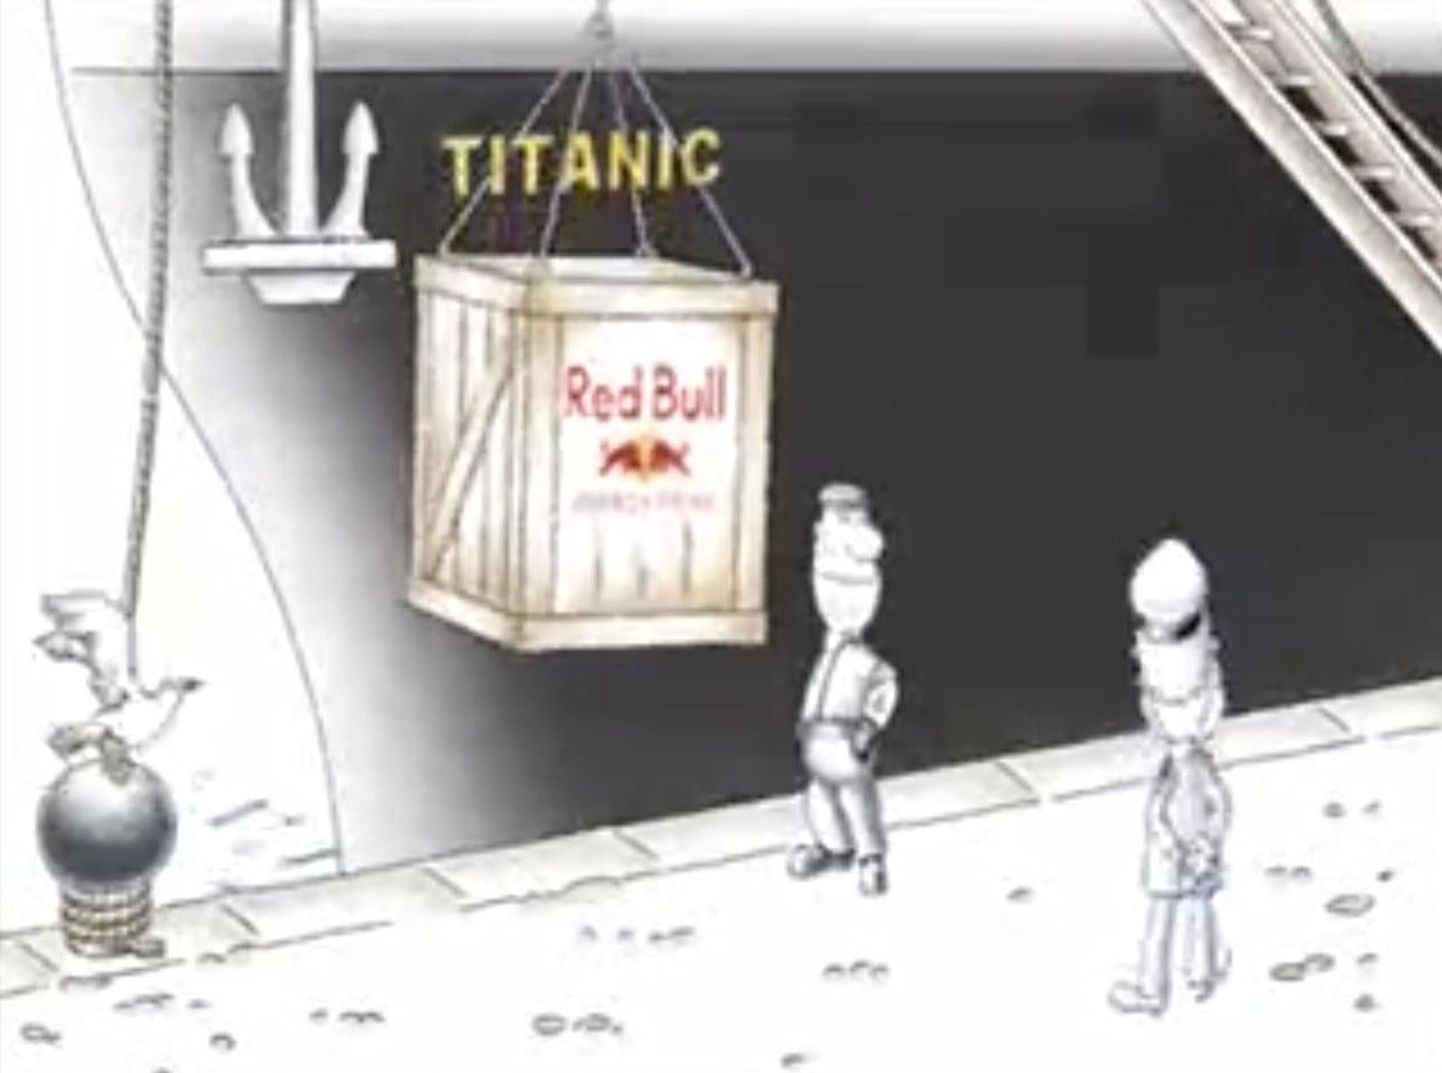 Red Bulli Titanicu teemaline reklaam sai kriitika osaliseks